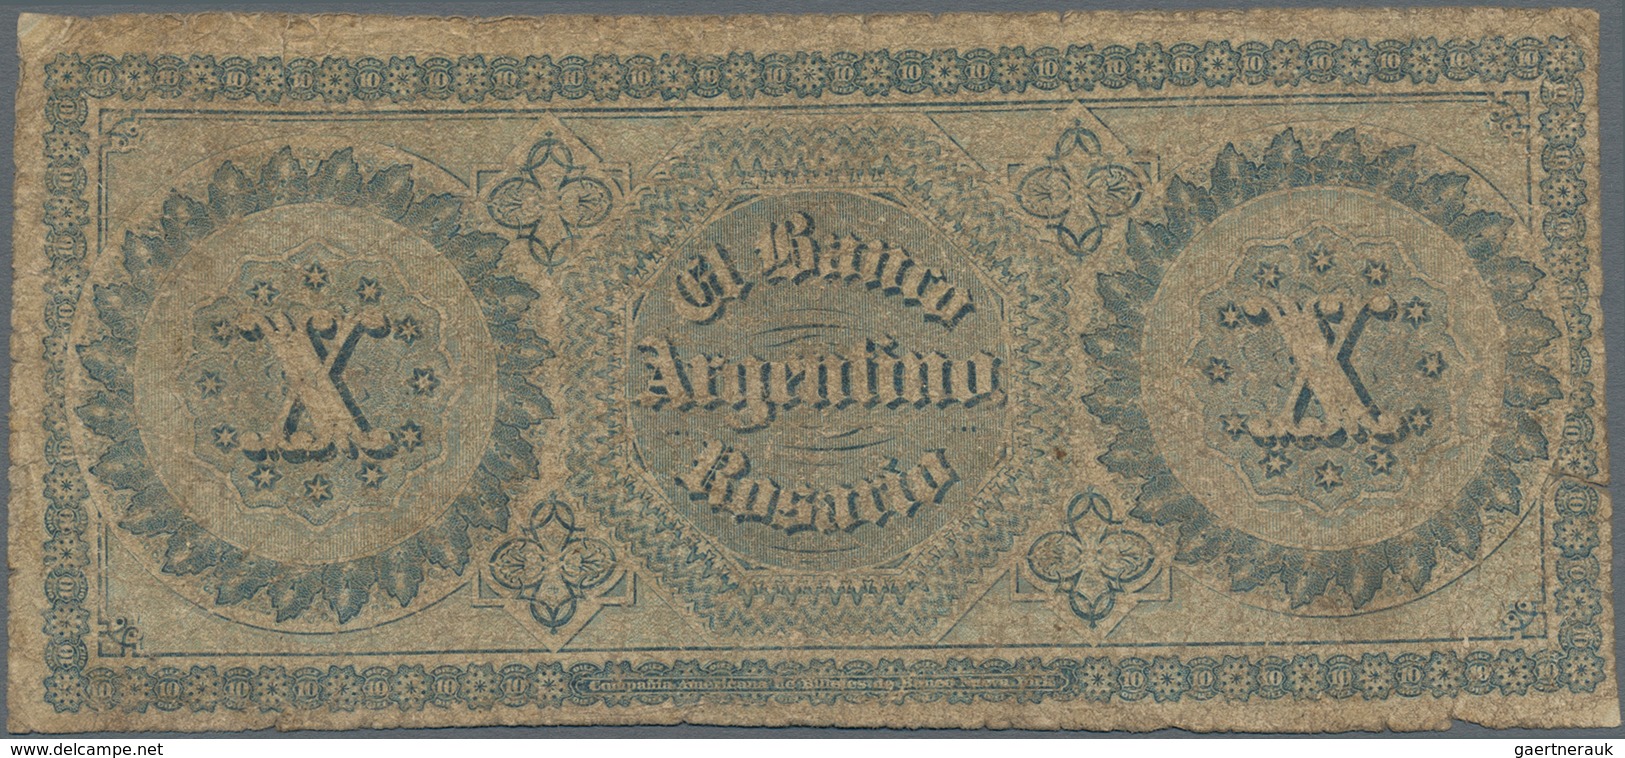 Argentina / Argentinien: 10 Pesos 1866 P.S1527 (VG) And 10 Centavos 1884 P.6 (F+). (2 Pcs.) - Argentinië